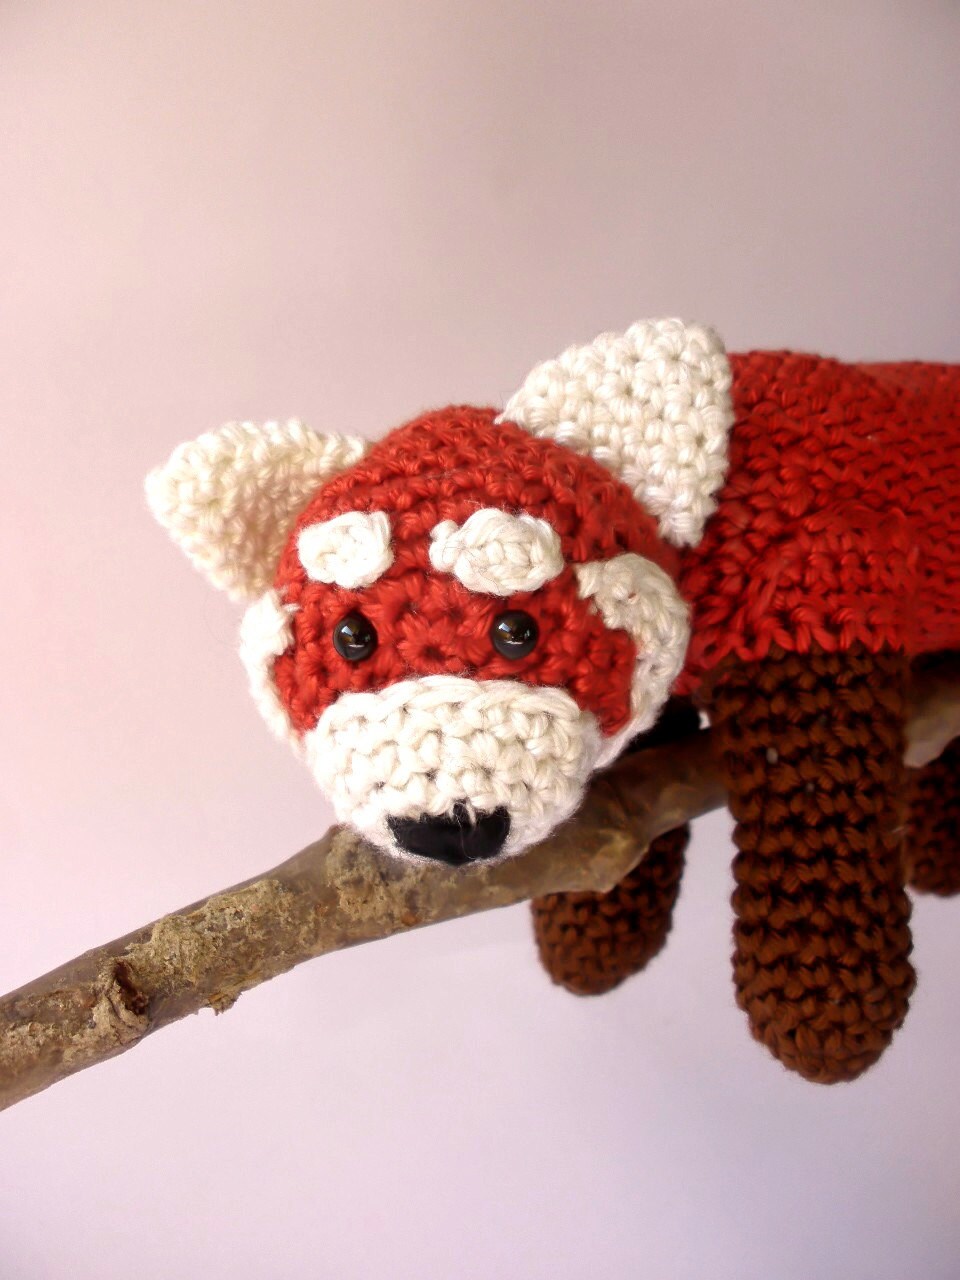 Red panda stuffed plush toy